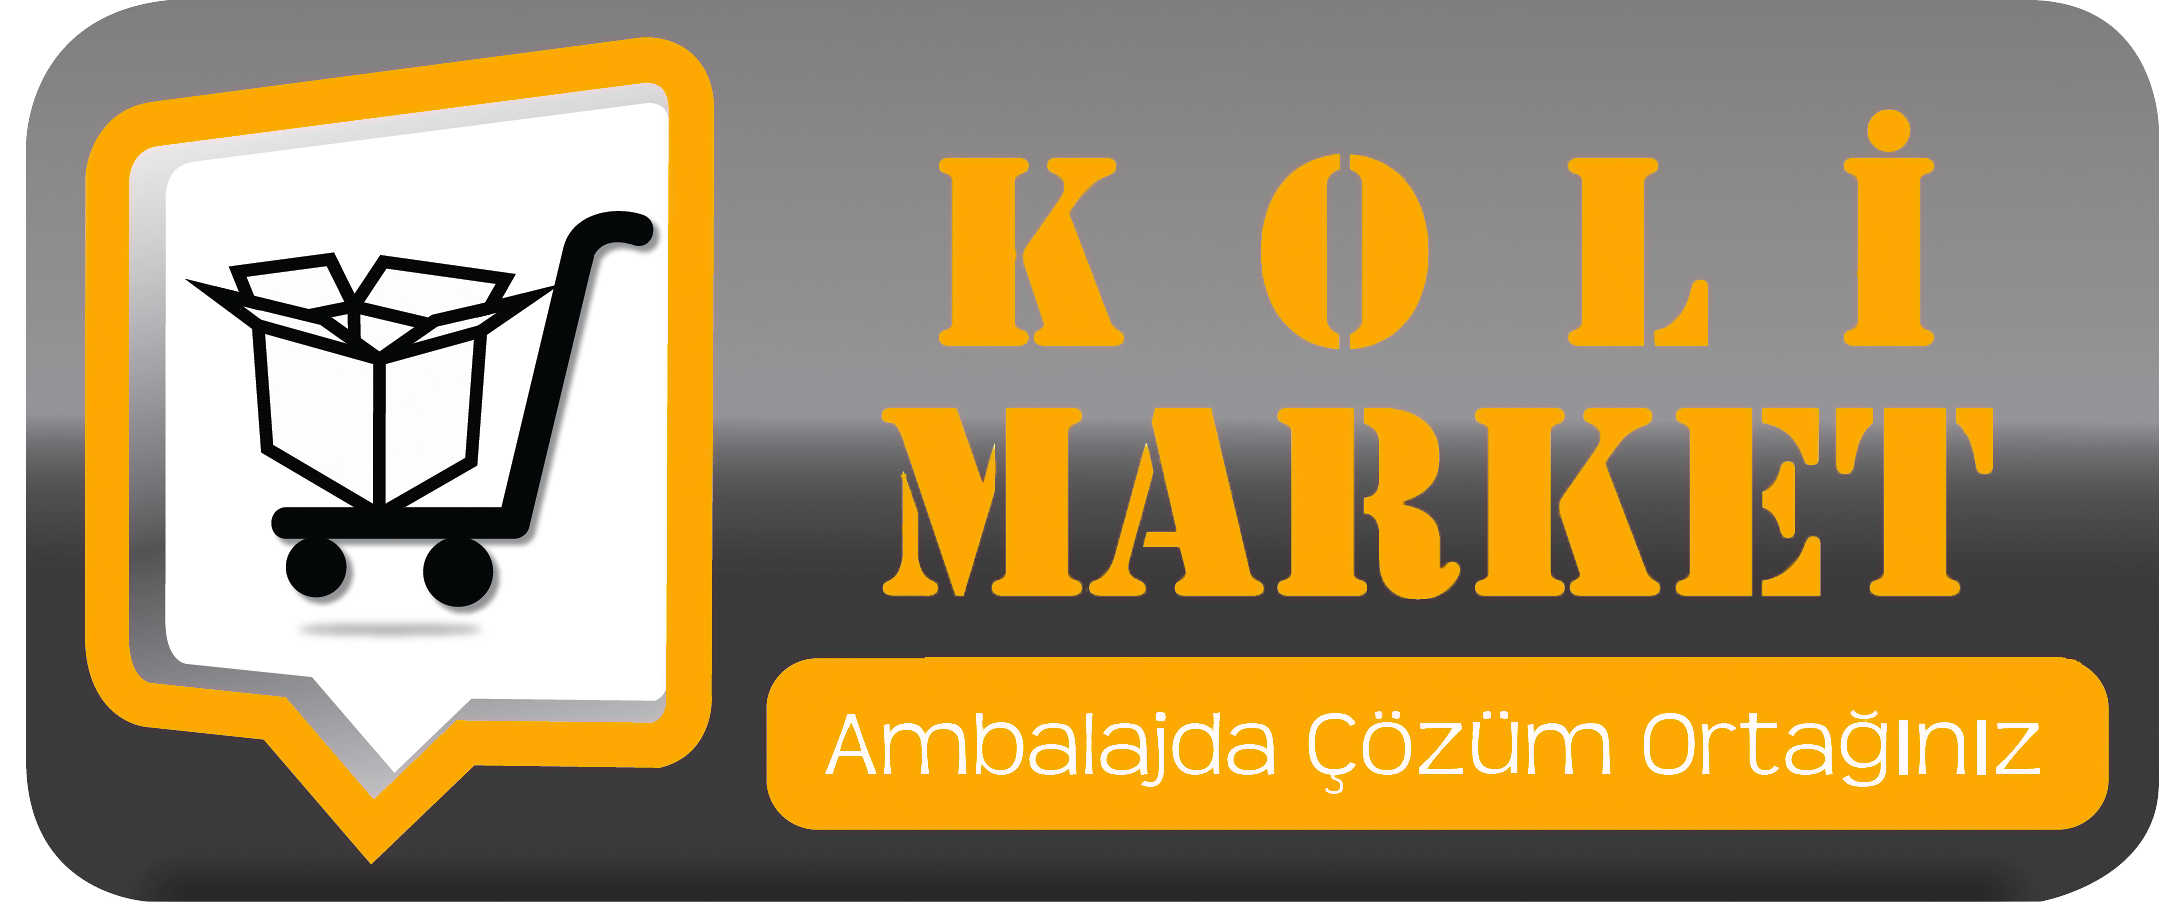 www-kolimarket-com-logo.png (1.28 MB)